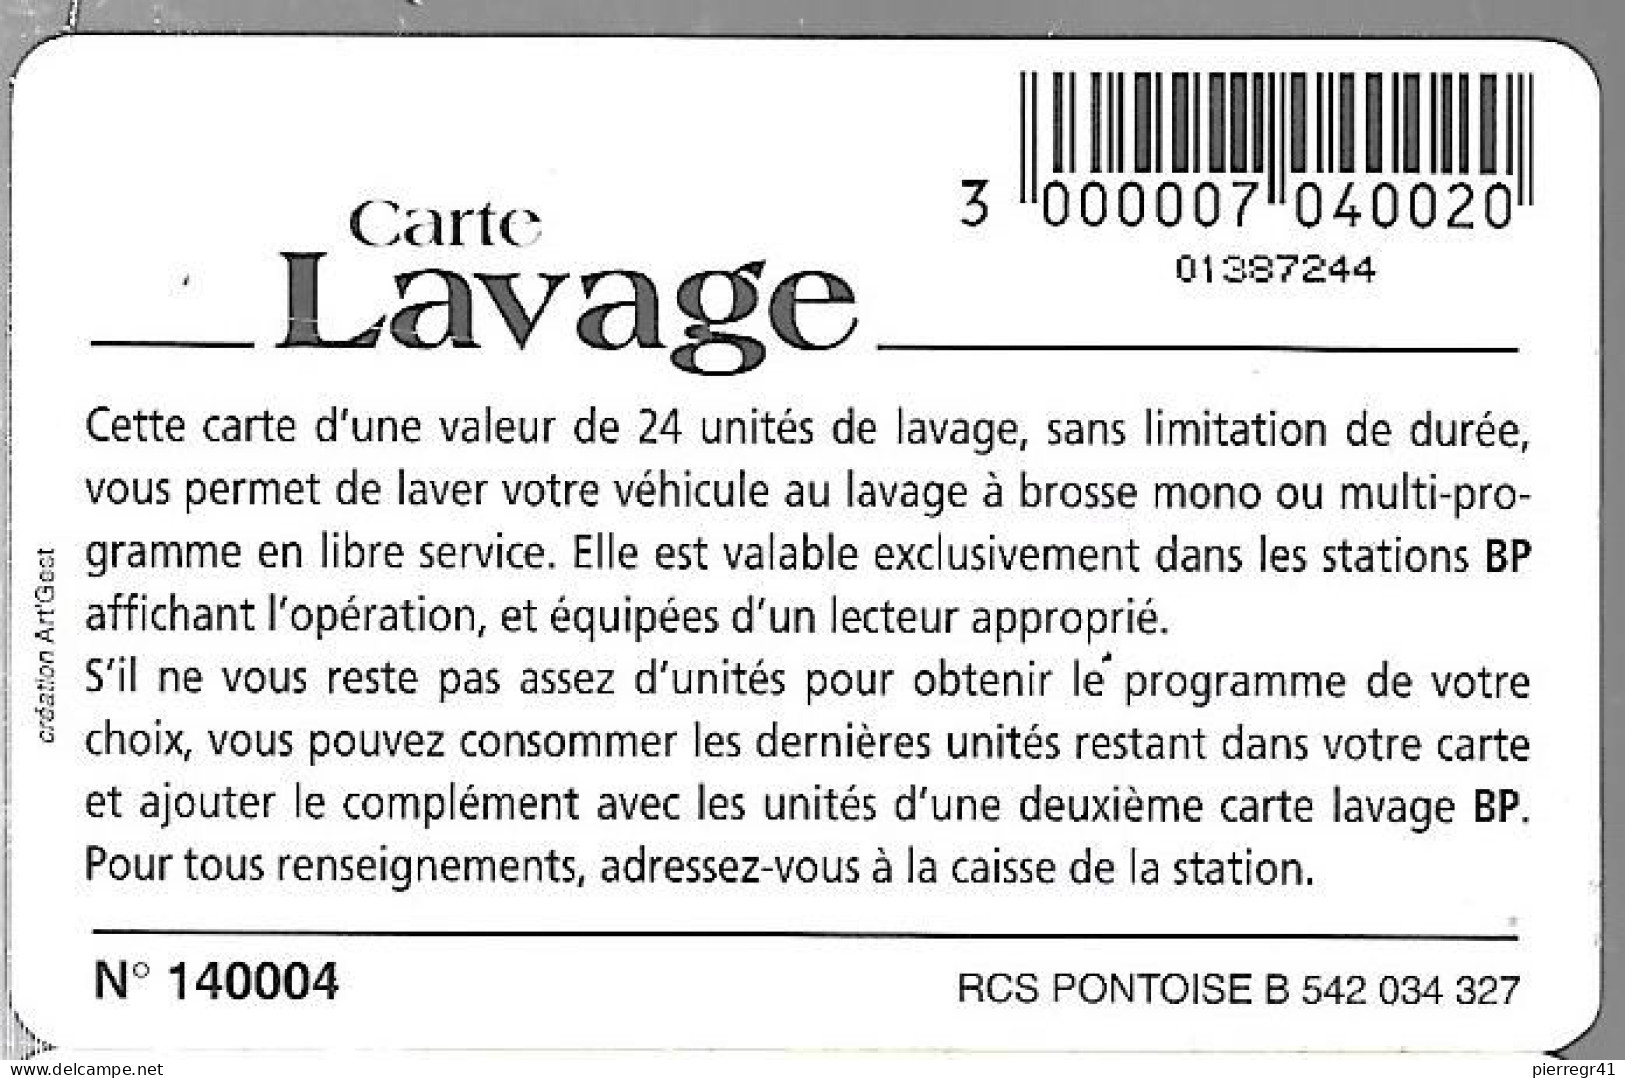 CARTE-PUCE-LAVAGE-BP-24-UNITES-DECODEUR TNT-V° N°140004-TBE - Colada De Coche